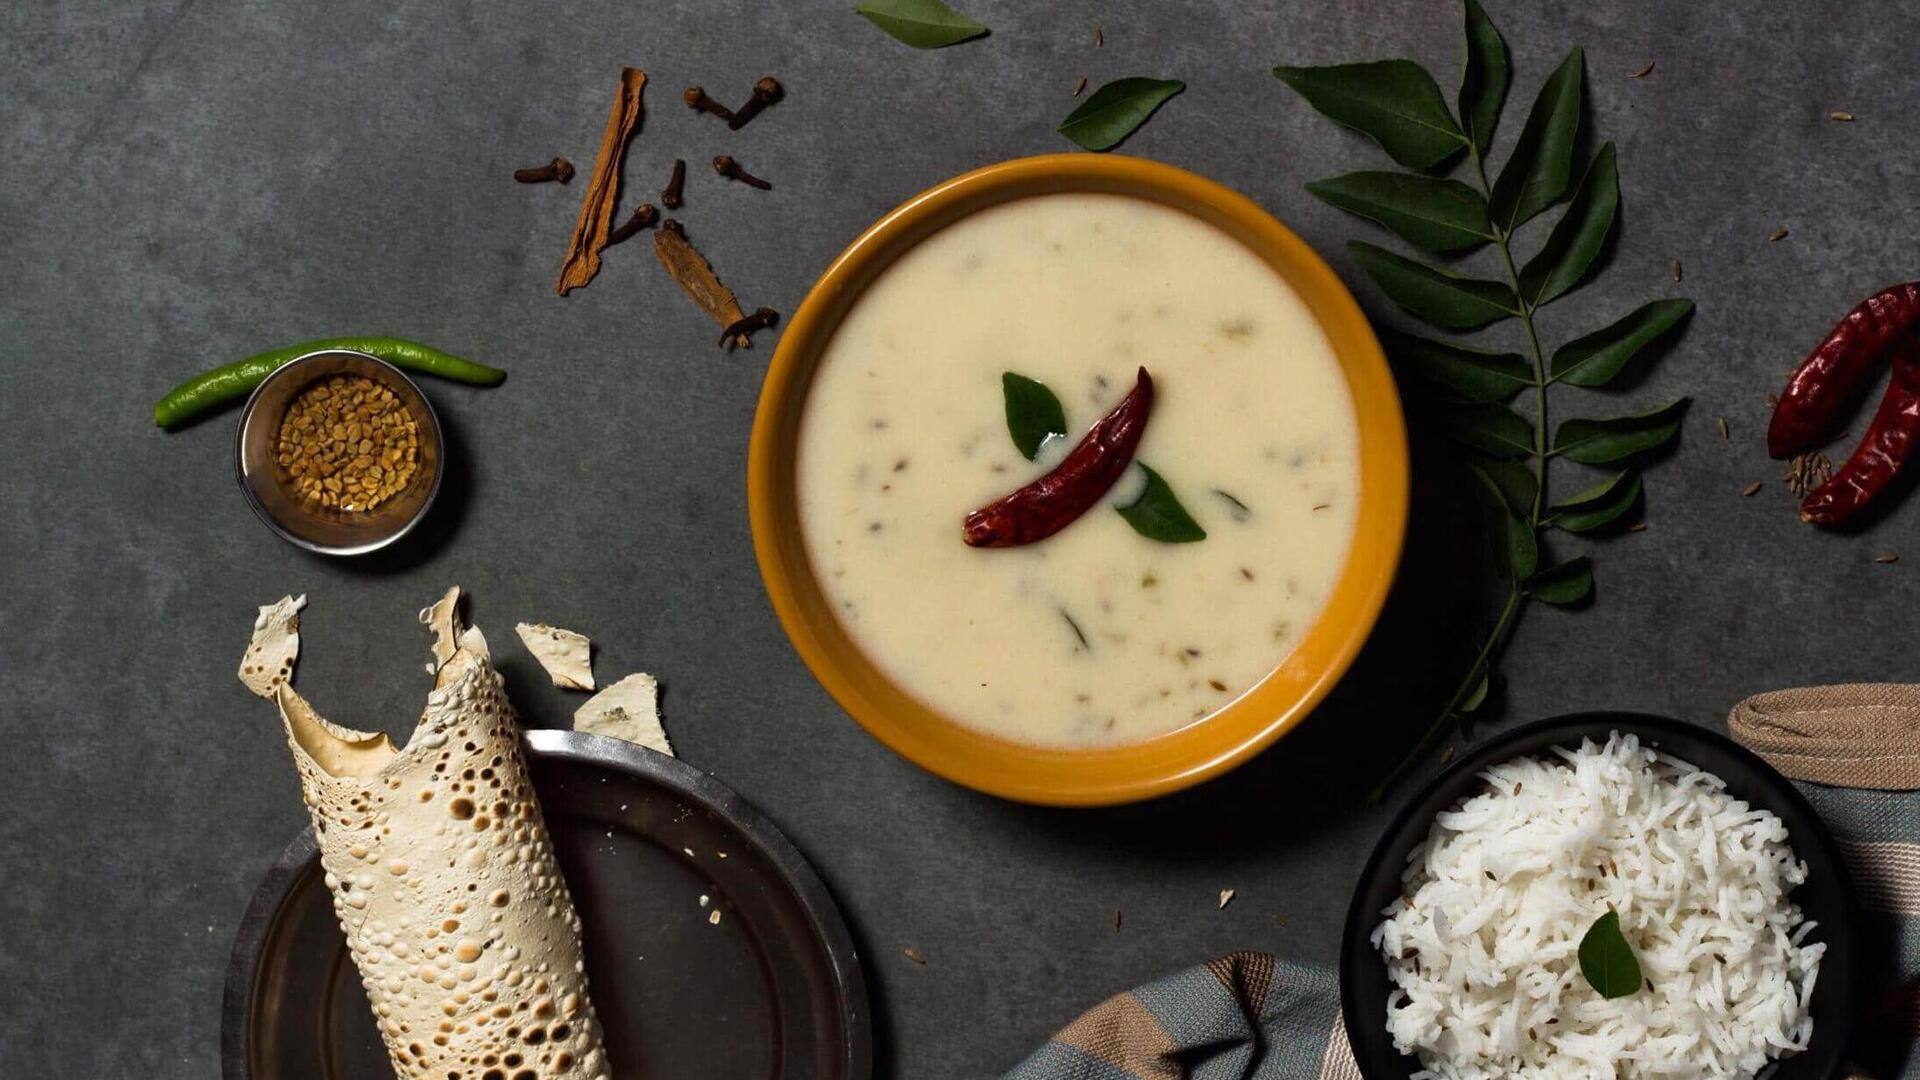 Ingredients that make Gujarati kadhi irresistibly scrumptious 